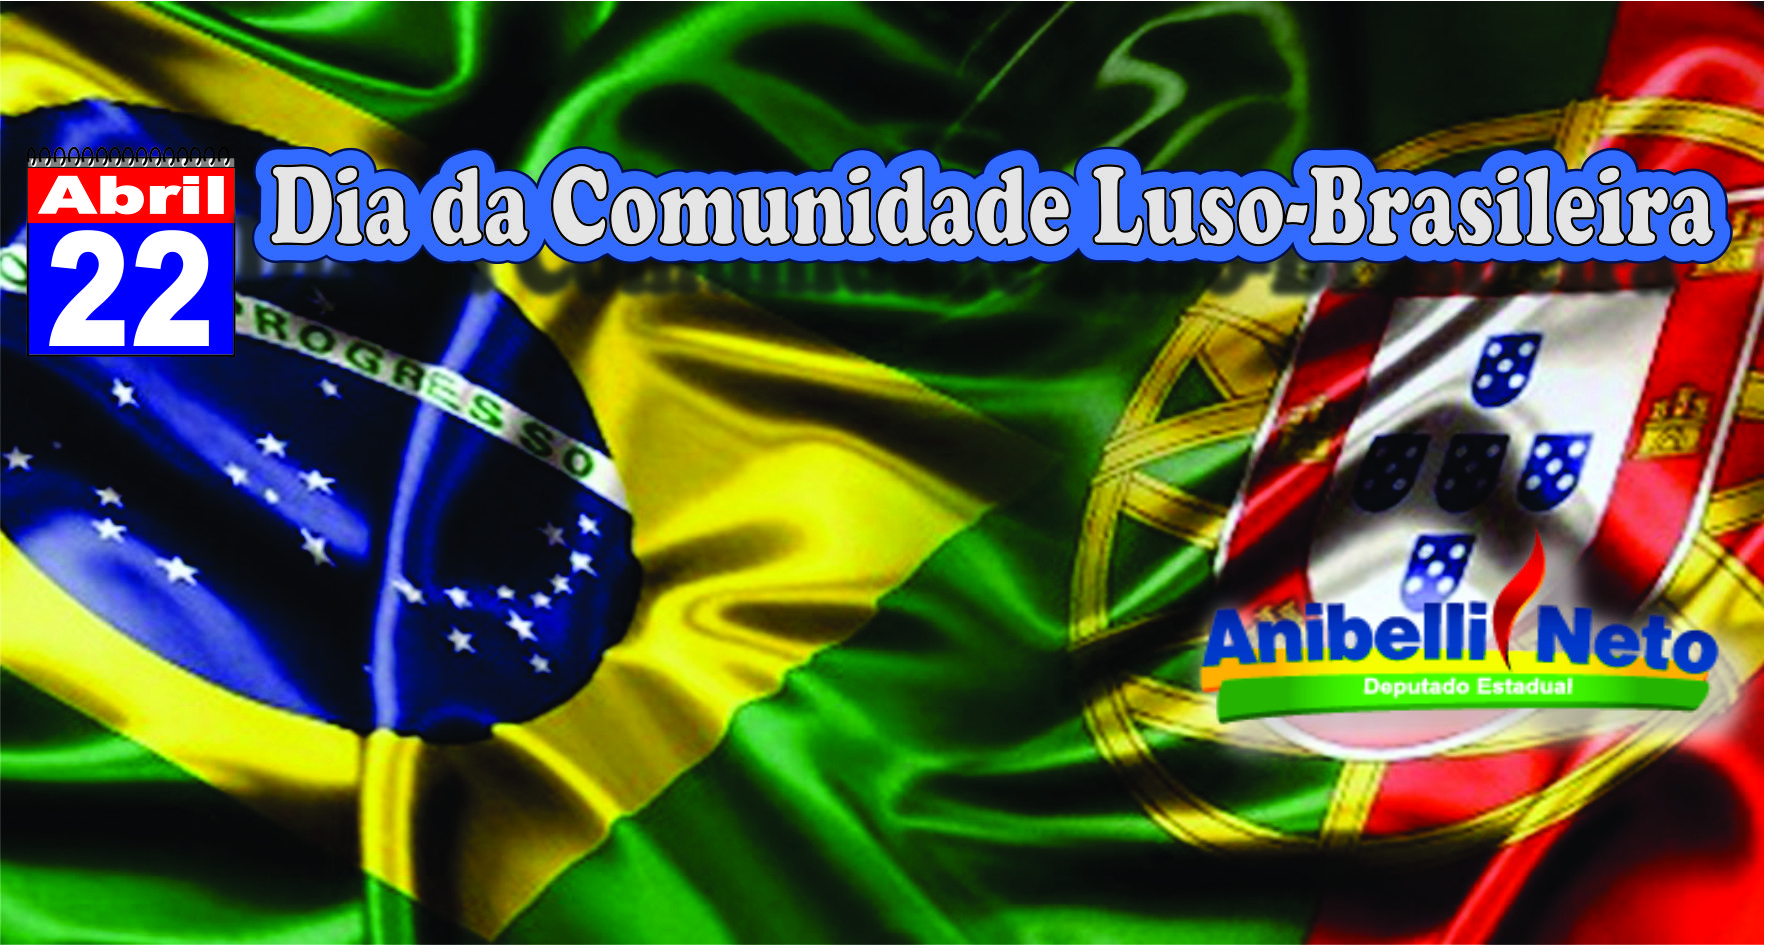 Resultado de imagem para Dia da Comunidade Luso-brasileira